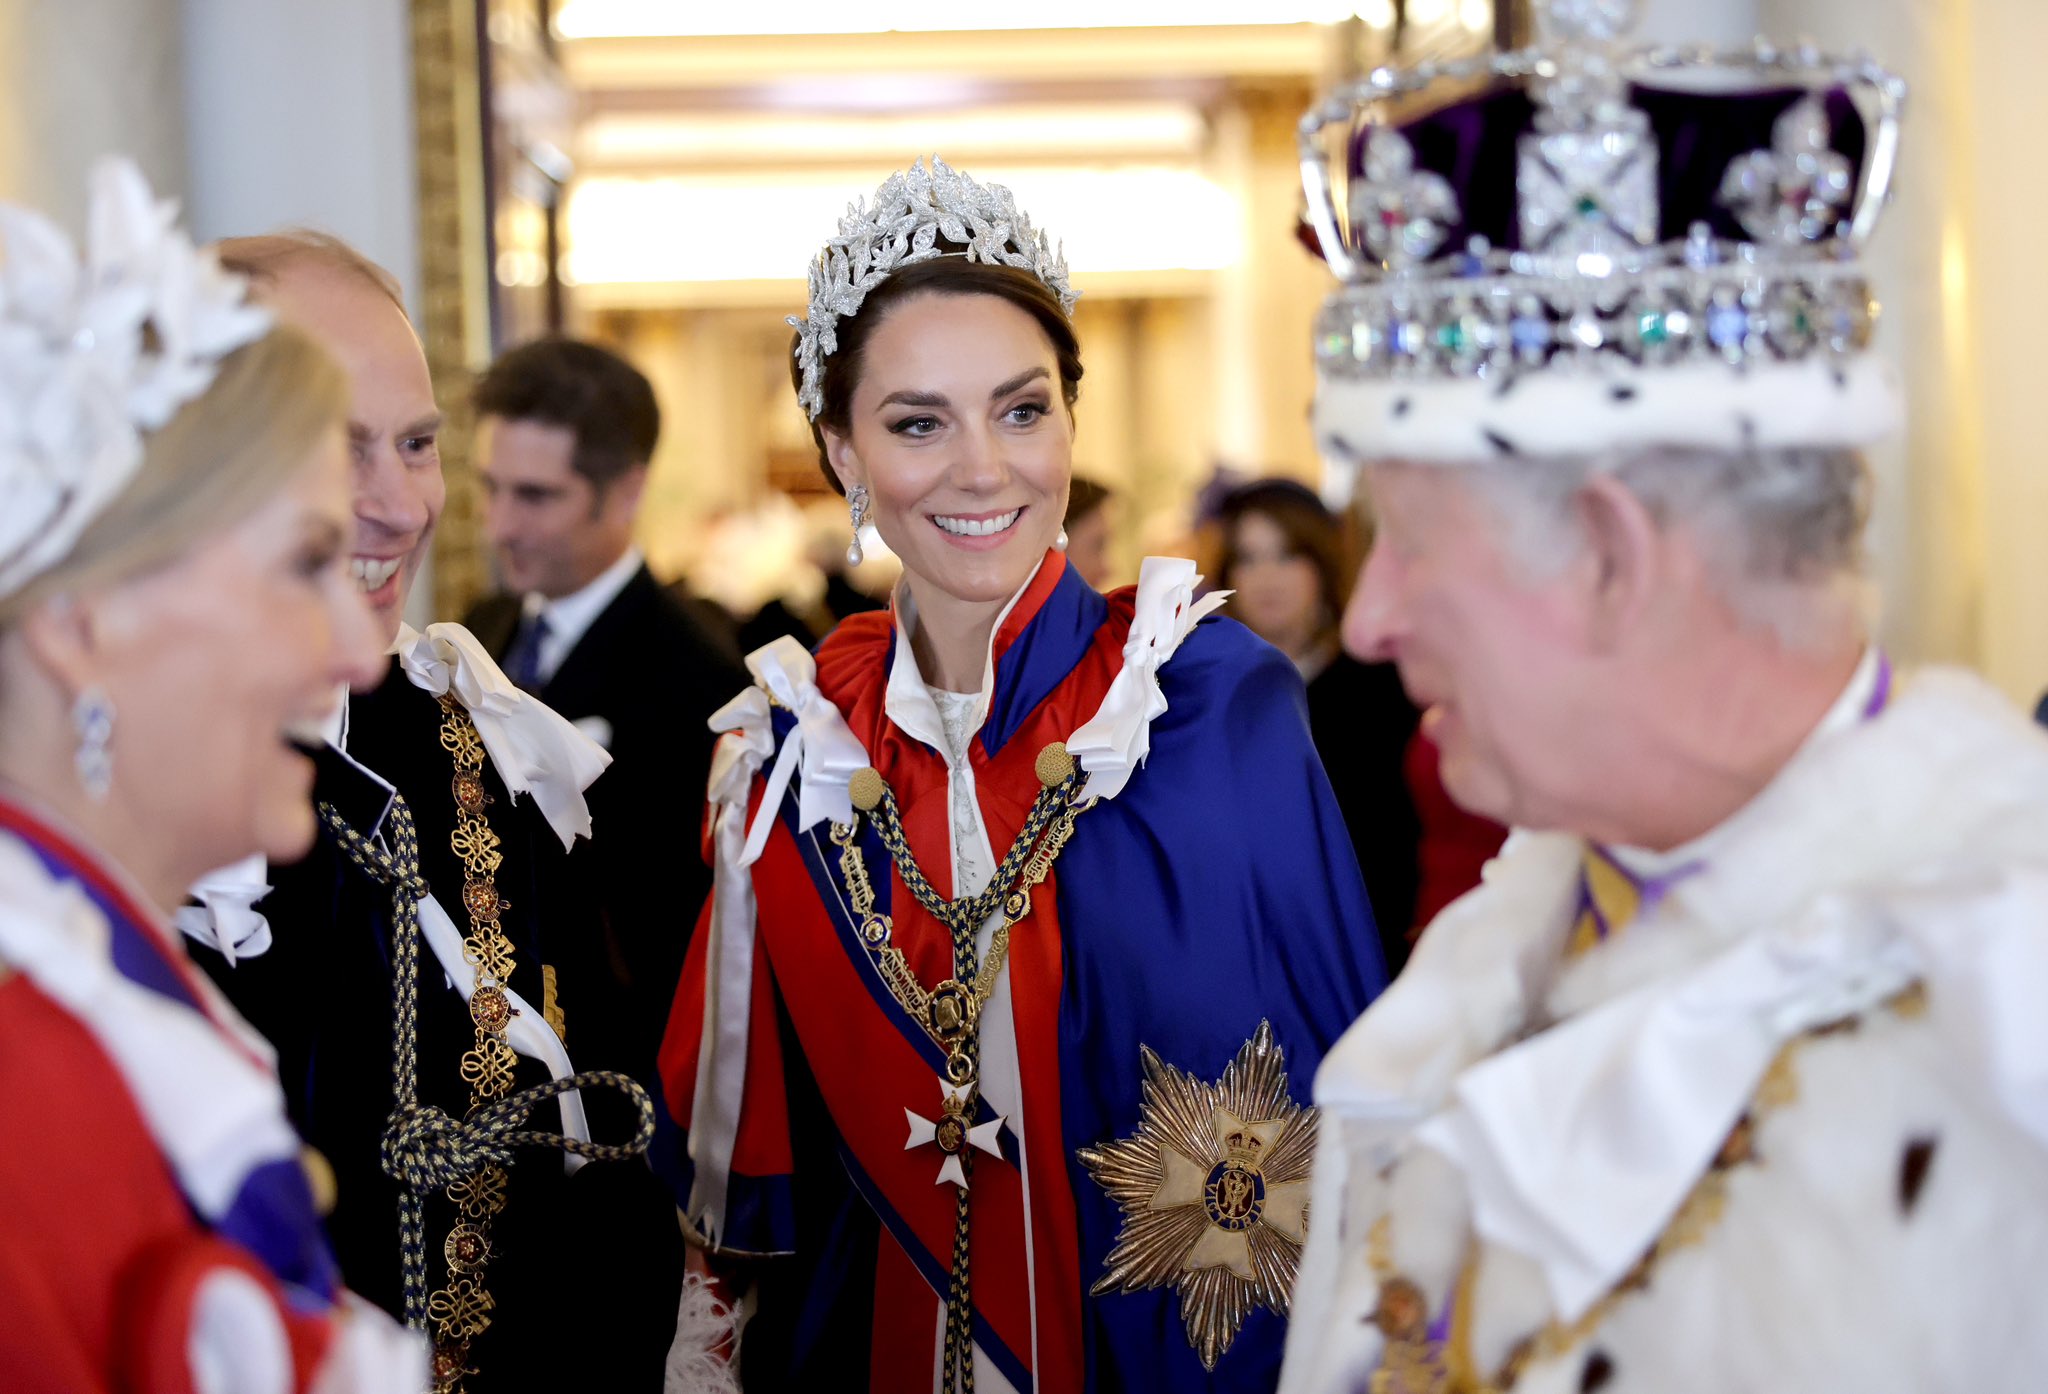 Le roi Charles et la reine Camilla souhaitent à la princesse Kate "un très joyeux anniversaire" alors qu'ils célèbrent aujourd'hui